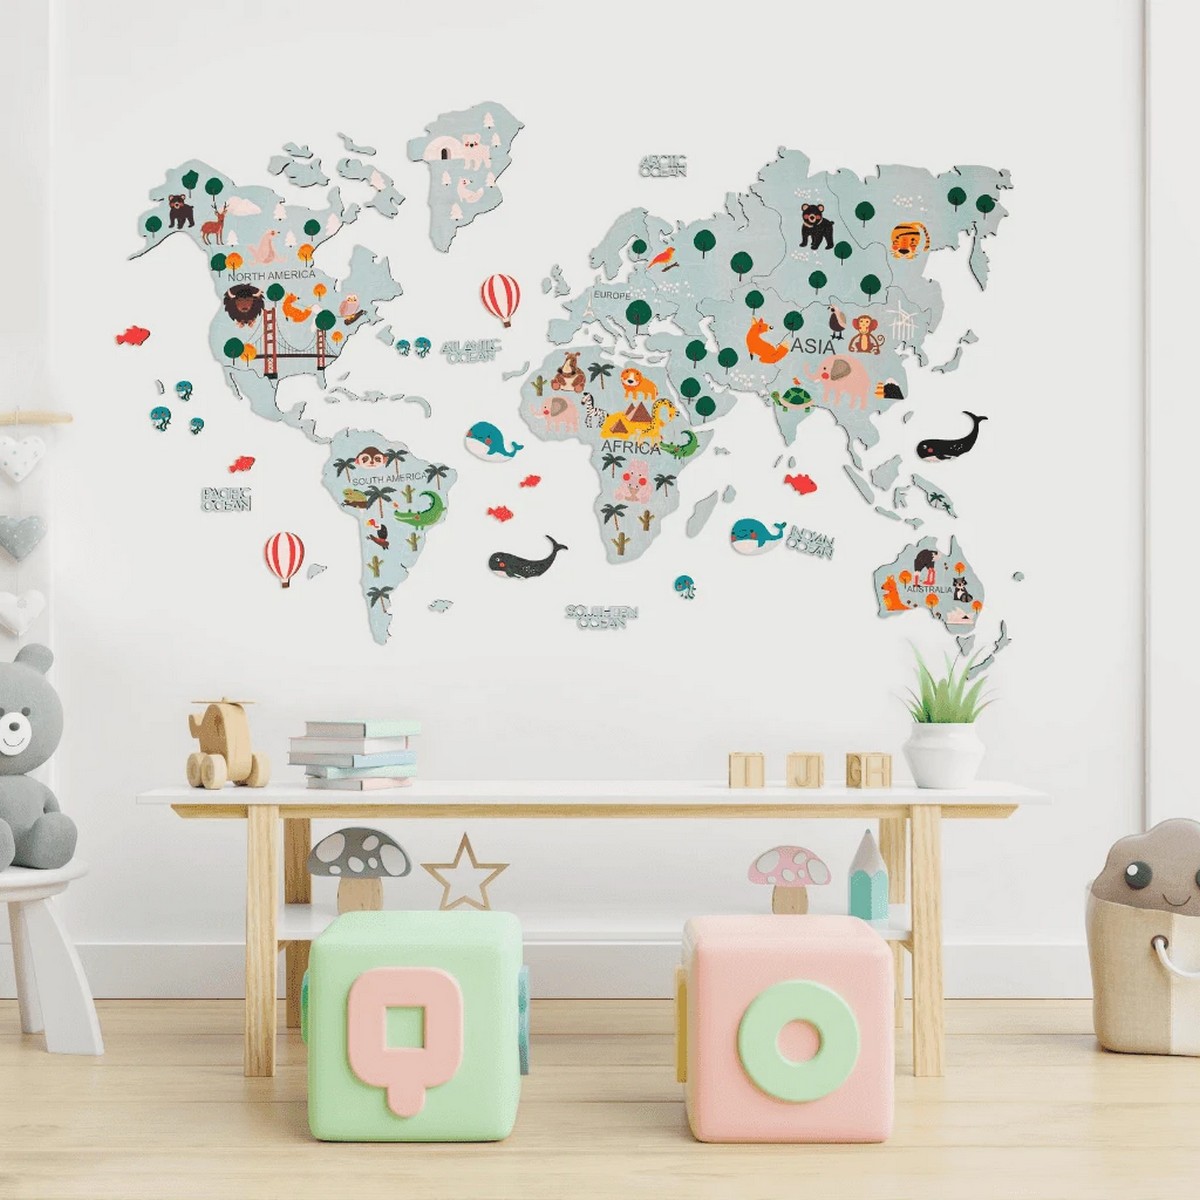 غرفة الاطفال خريطة العالم